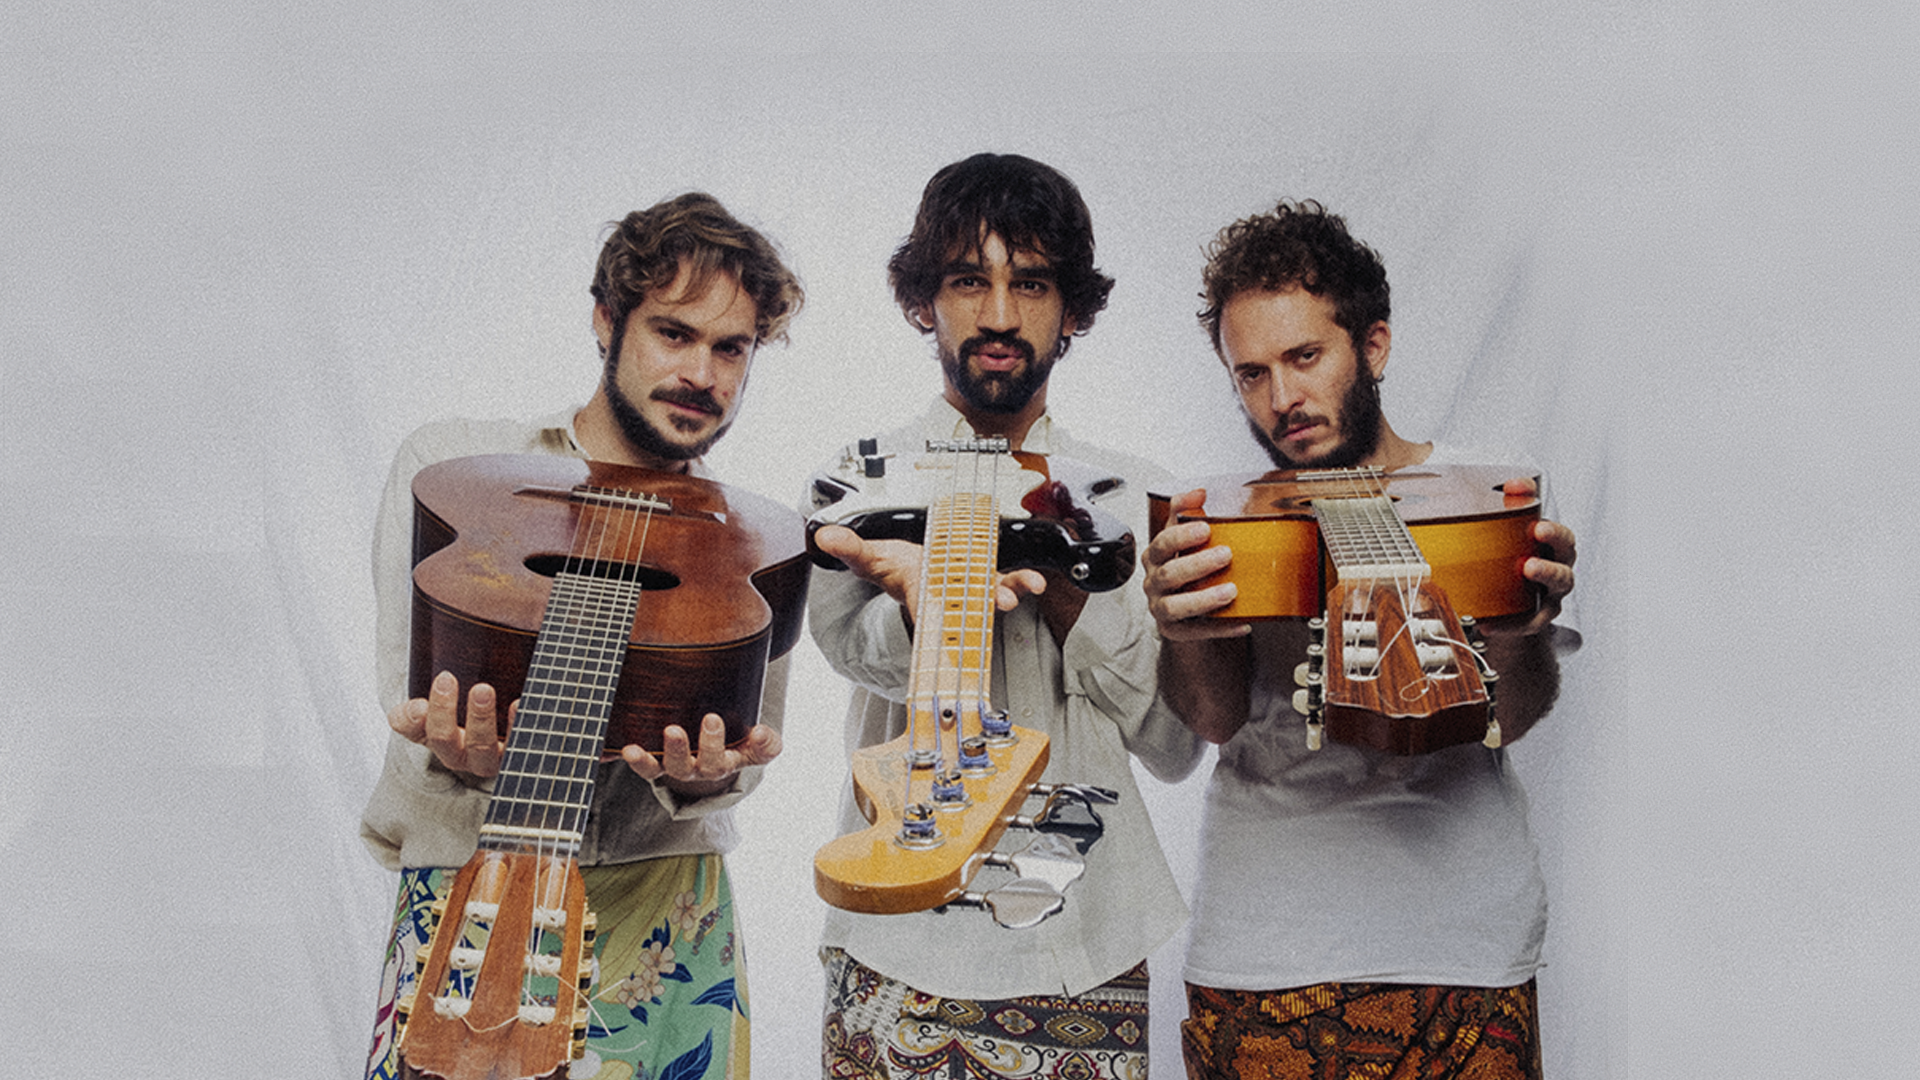 Nanan, Gustavito e Luizga posam com seus instrumentos em foto de divulgação do álbum "Destino do Clã"